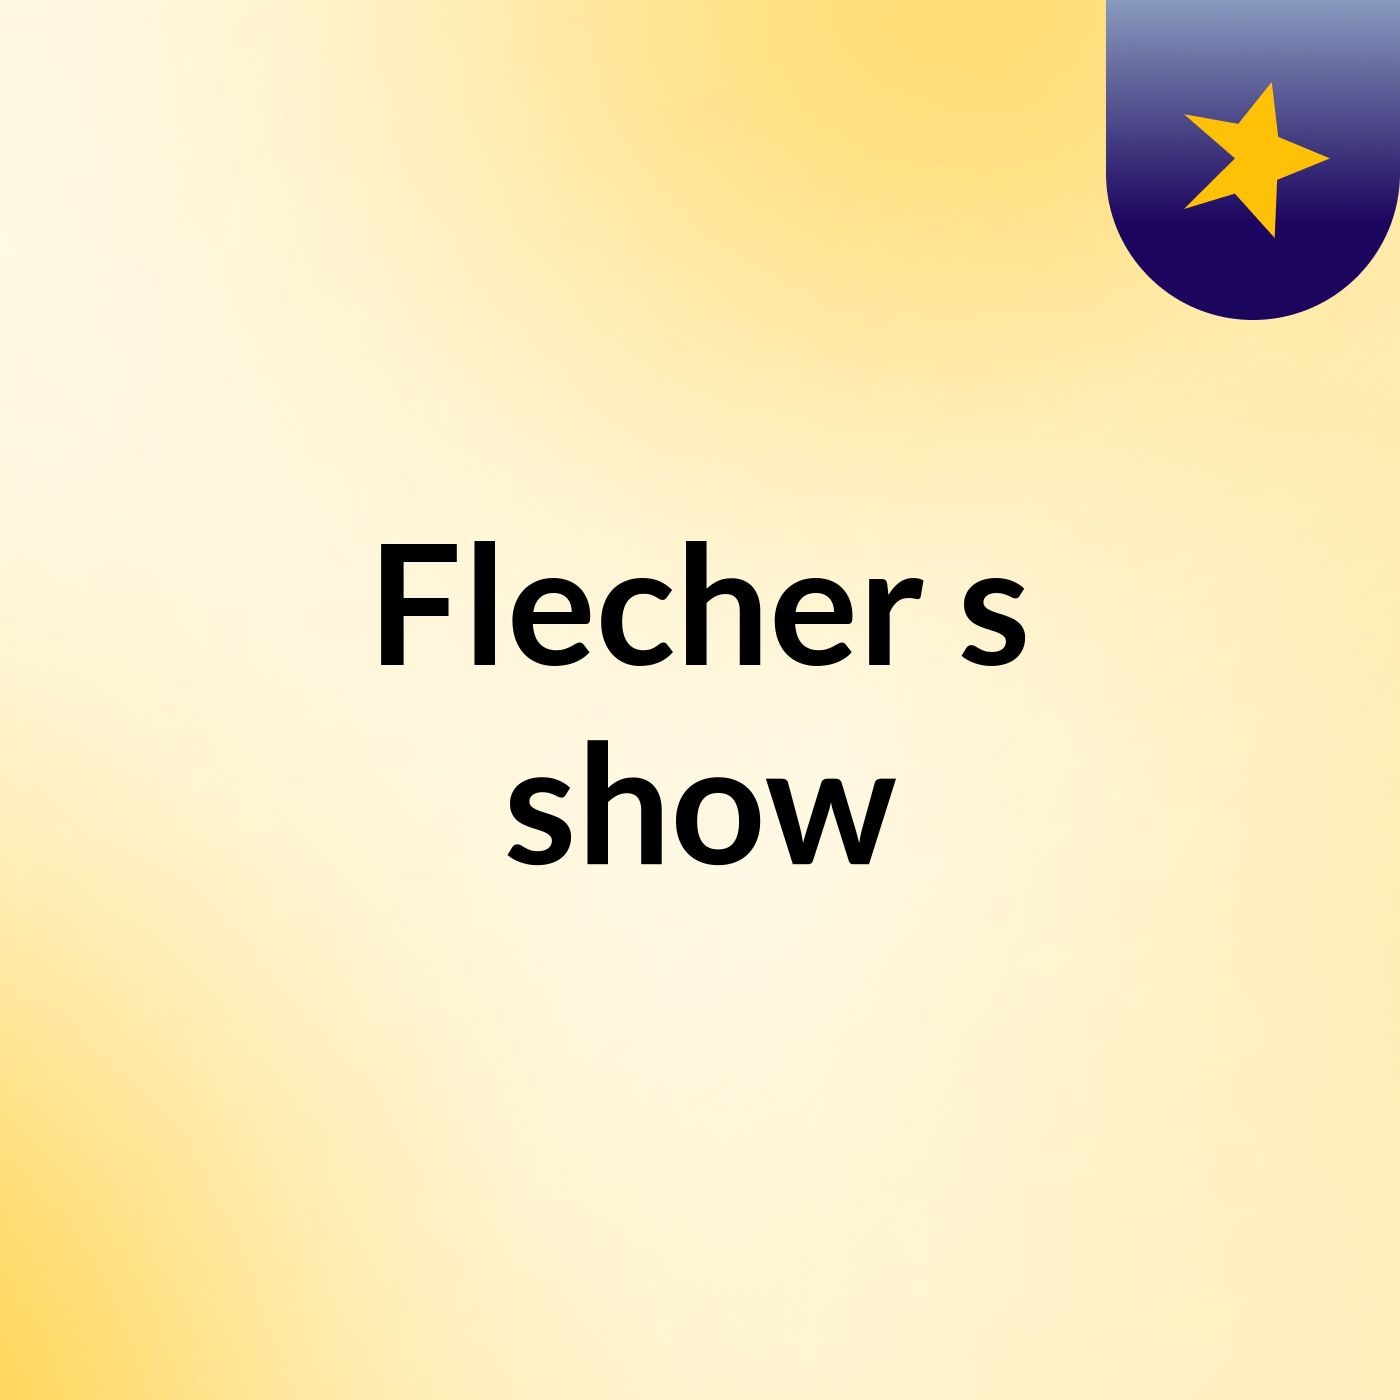 Flecher's show